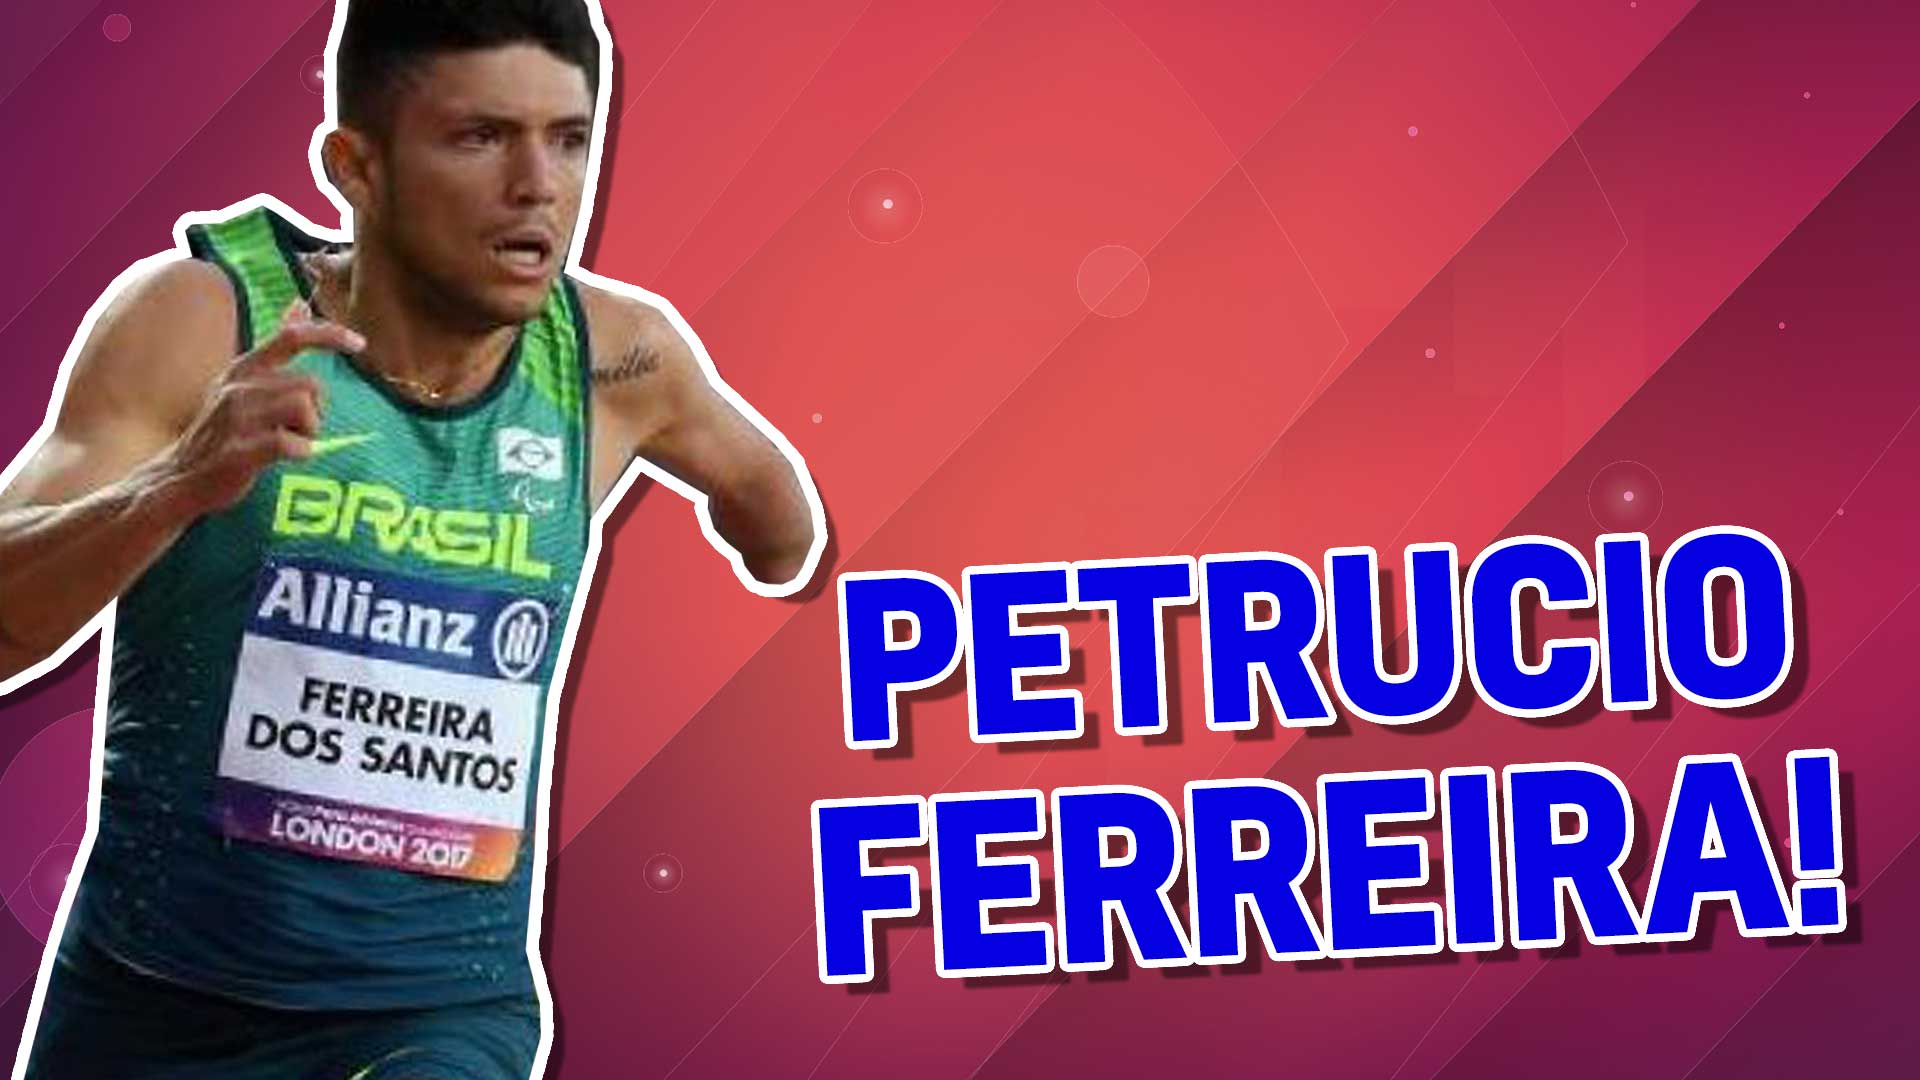 Petrucio Ferreira